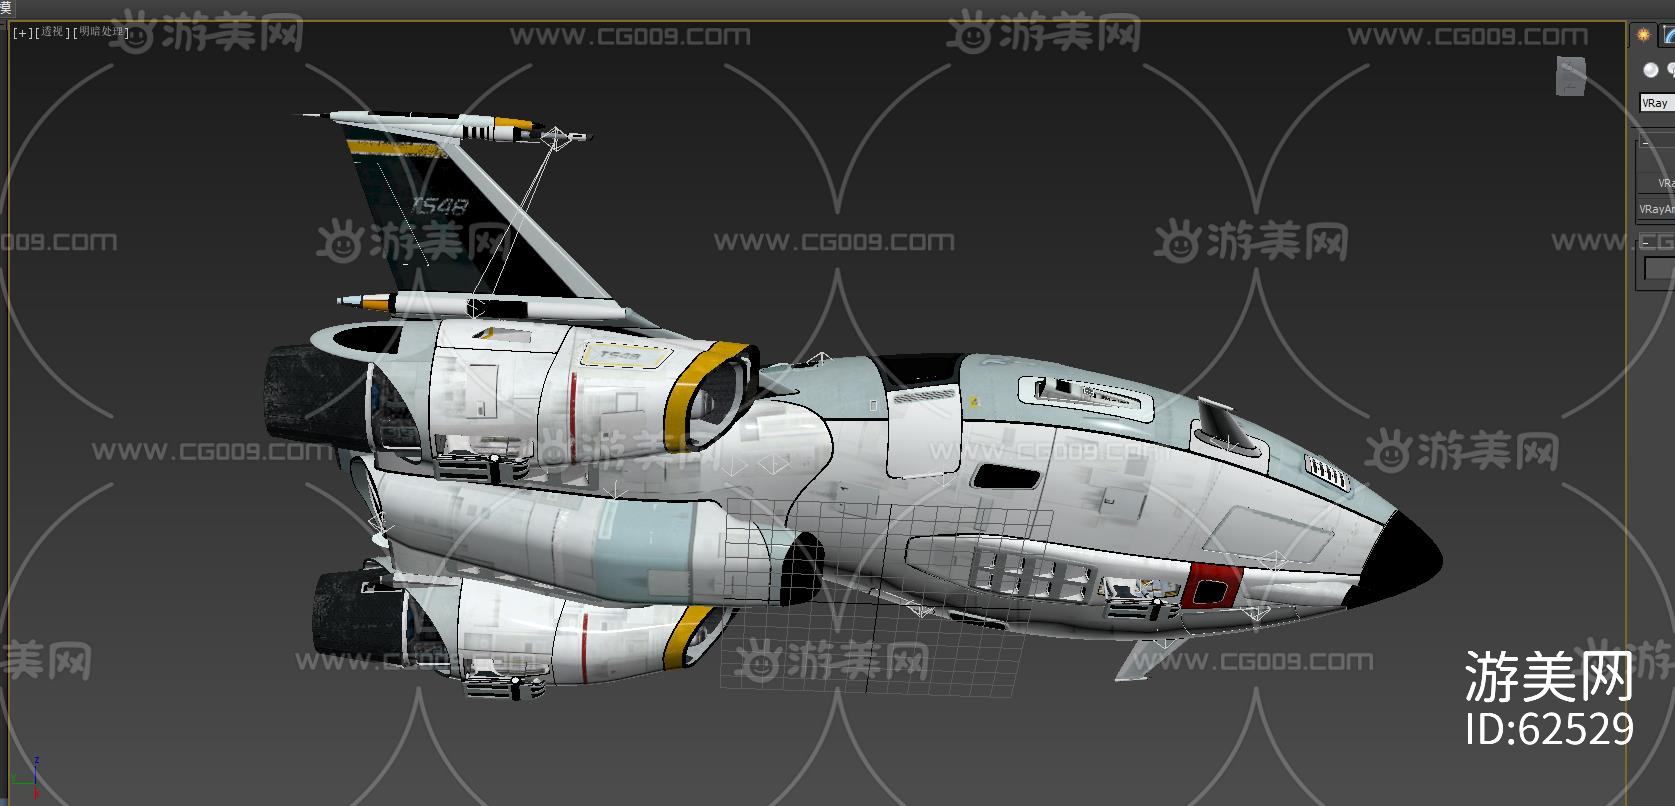 影视级别科幻宇宙飞船 机舱 登月飞机 未来飞船 详细内部结构